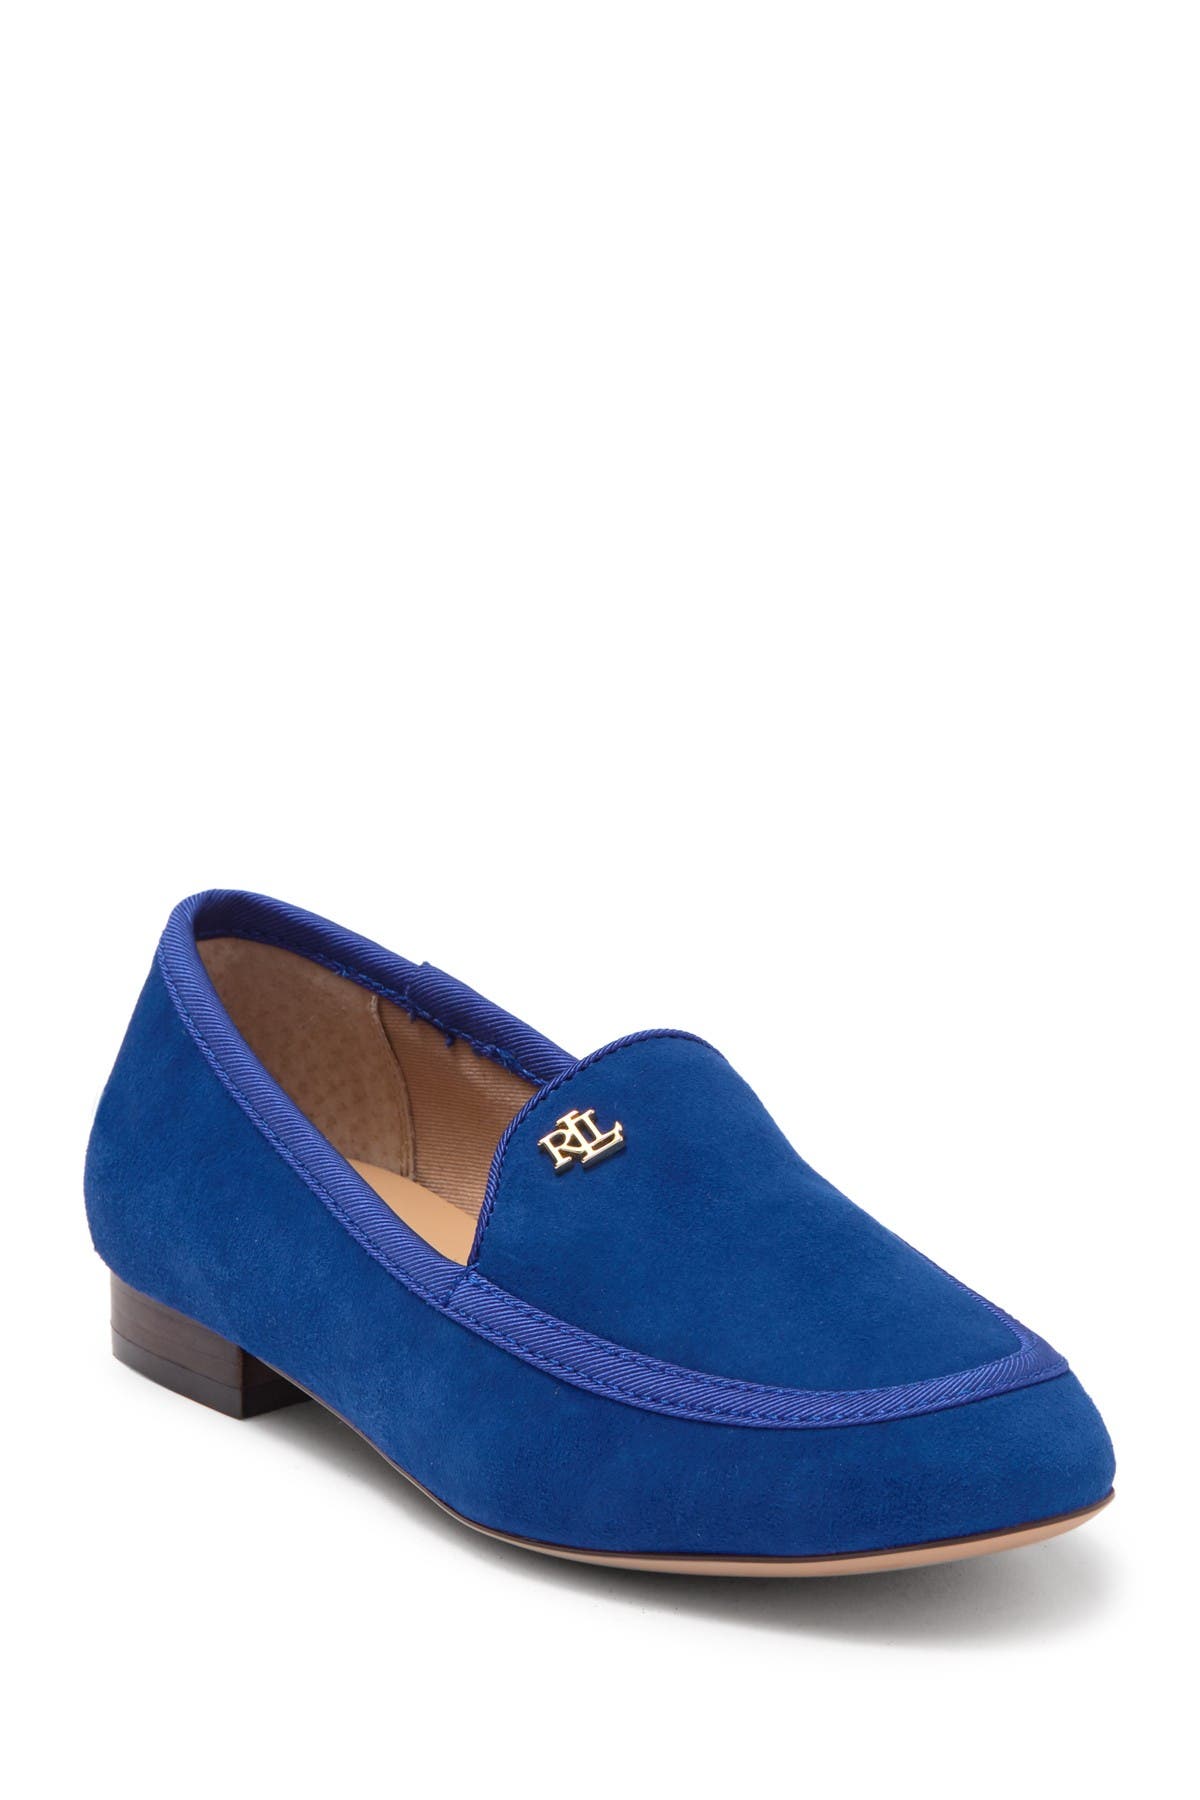 ralph lauren blue suede loafers